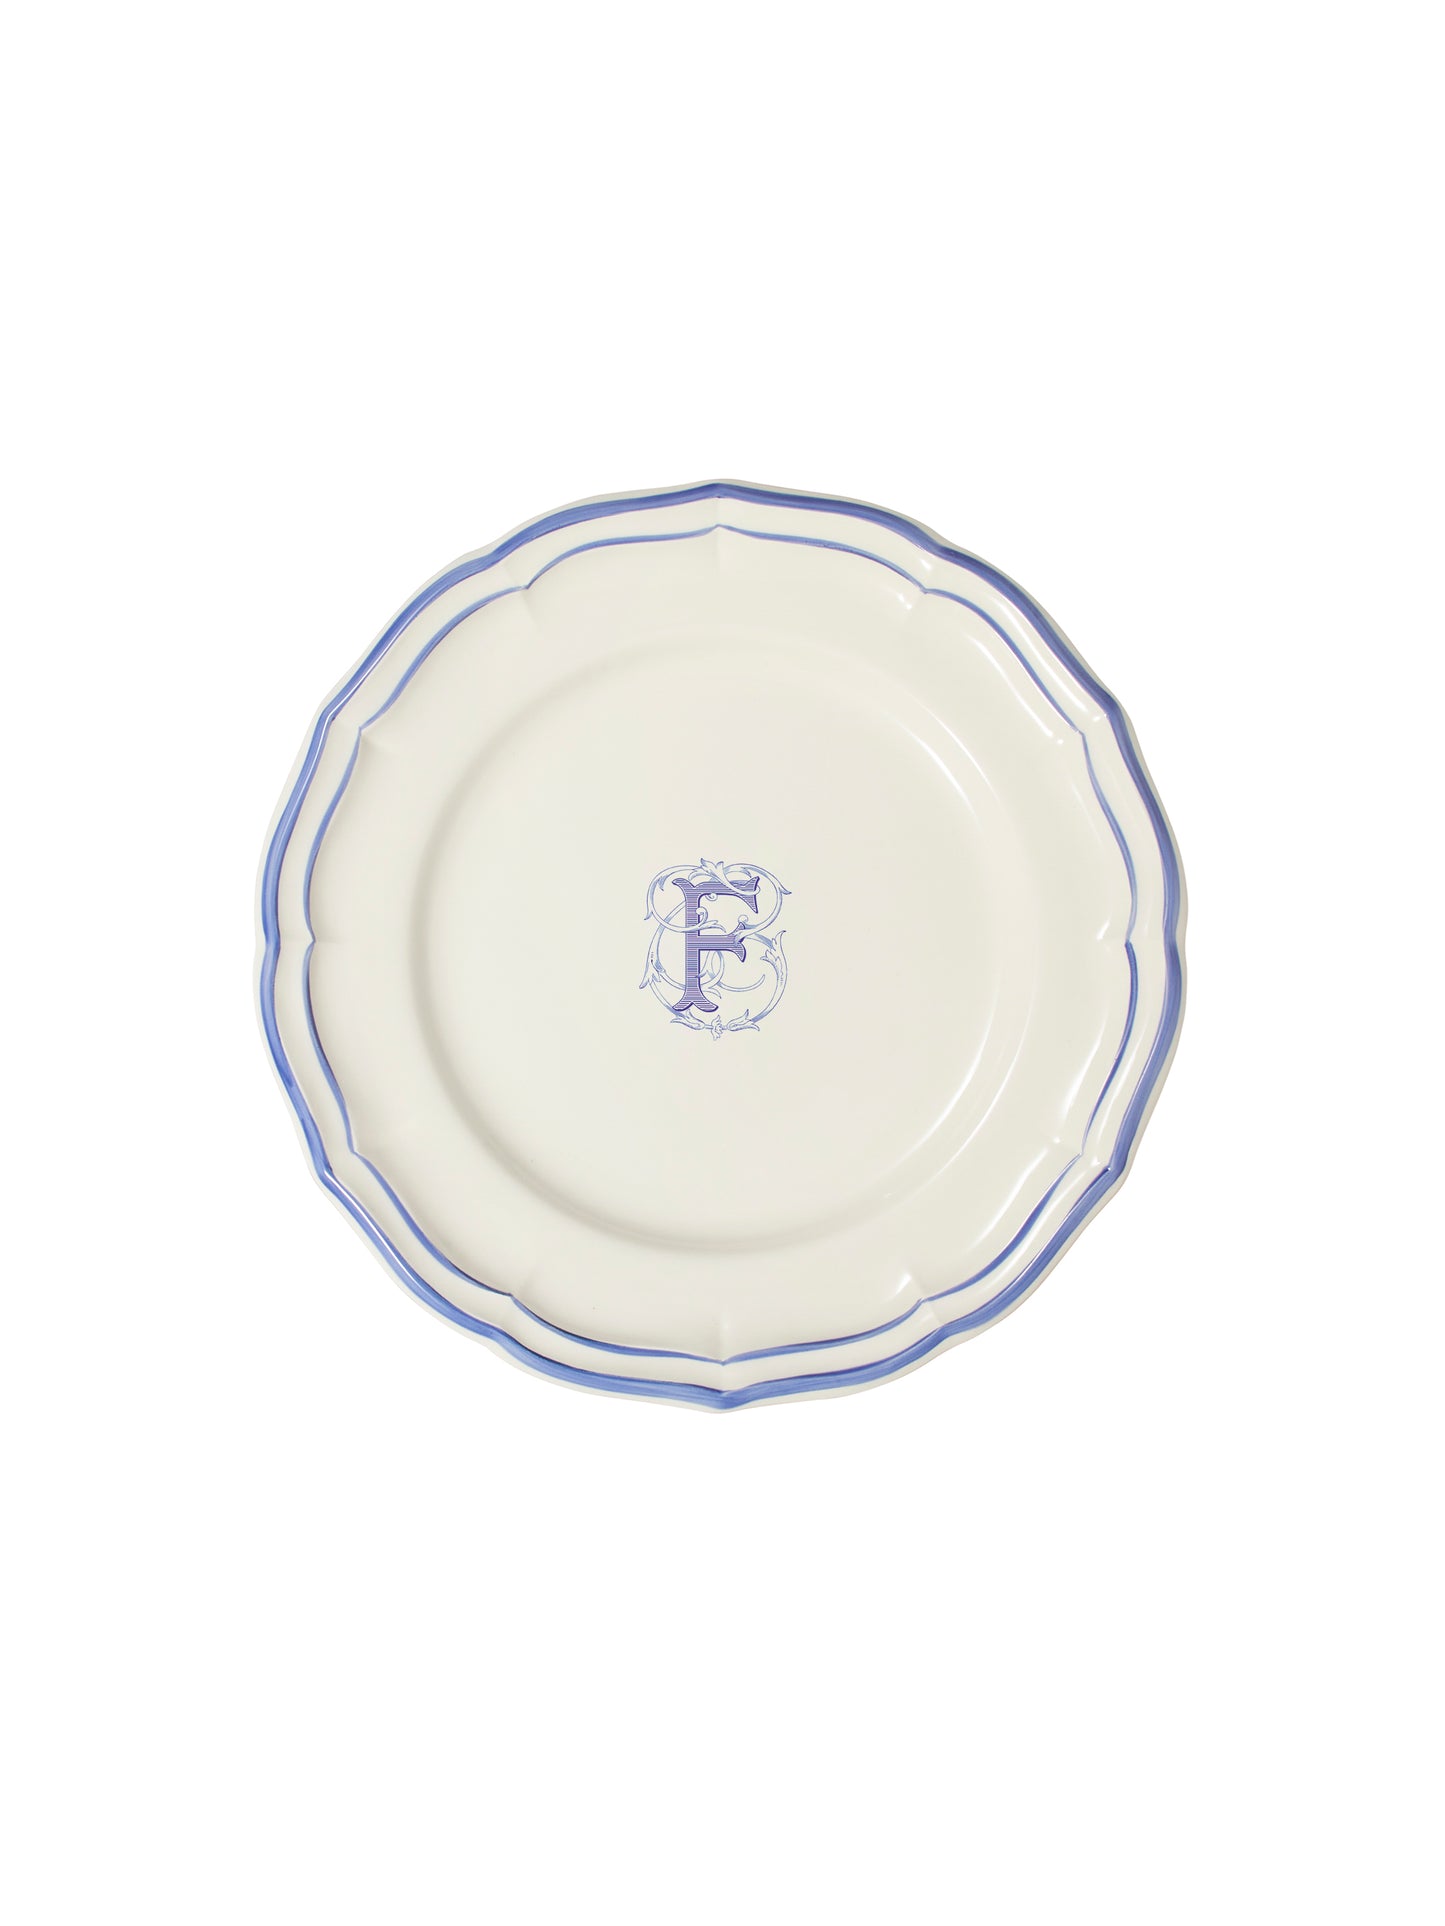 Gien Filet Bleu Monogram Salad Plate F Weston Table